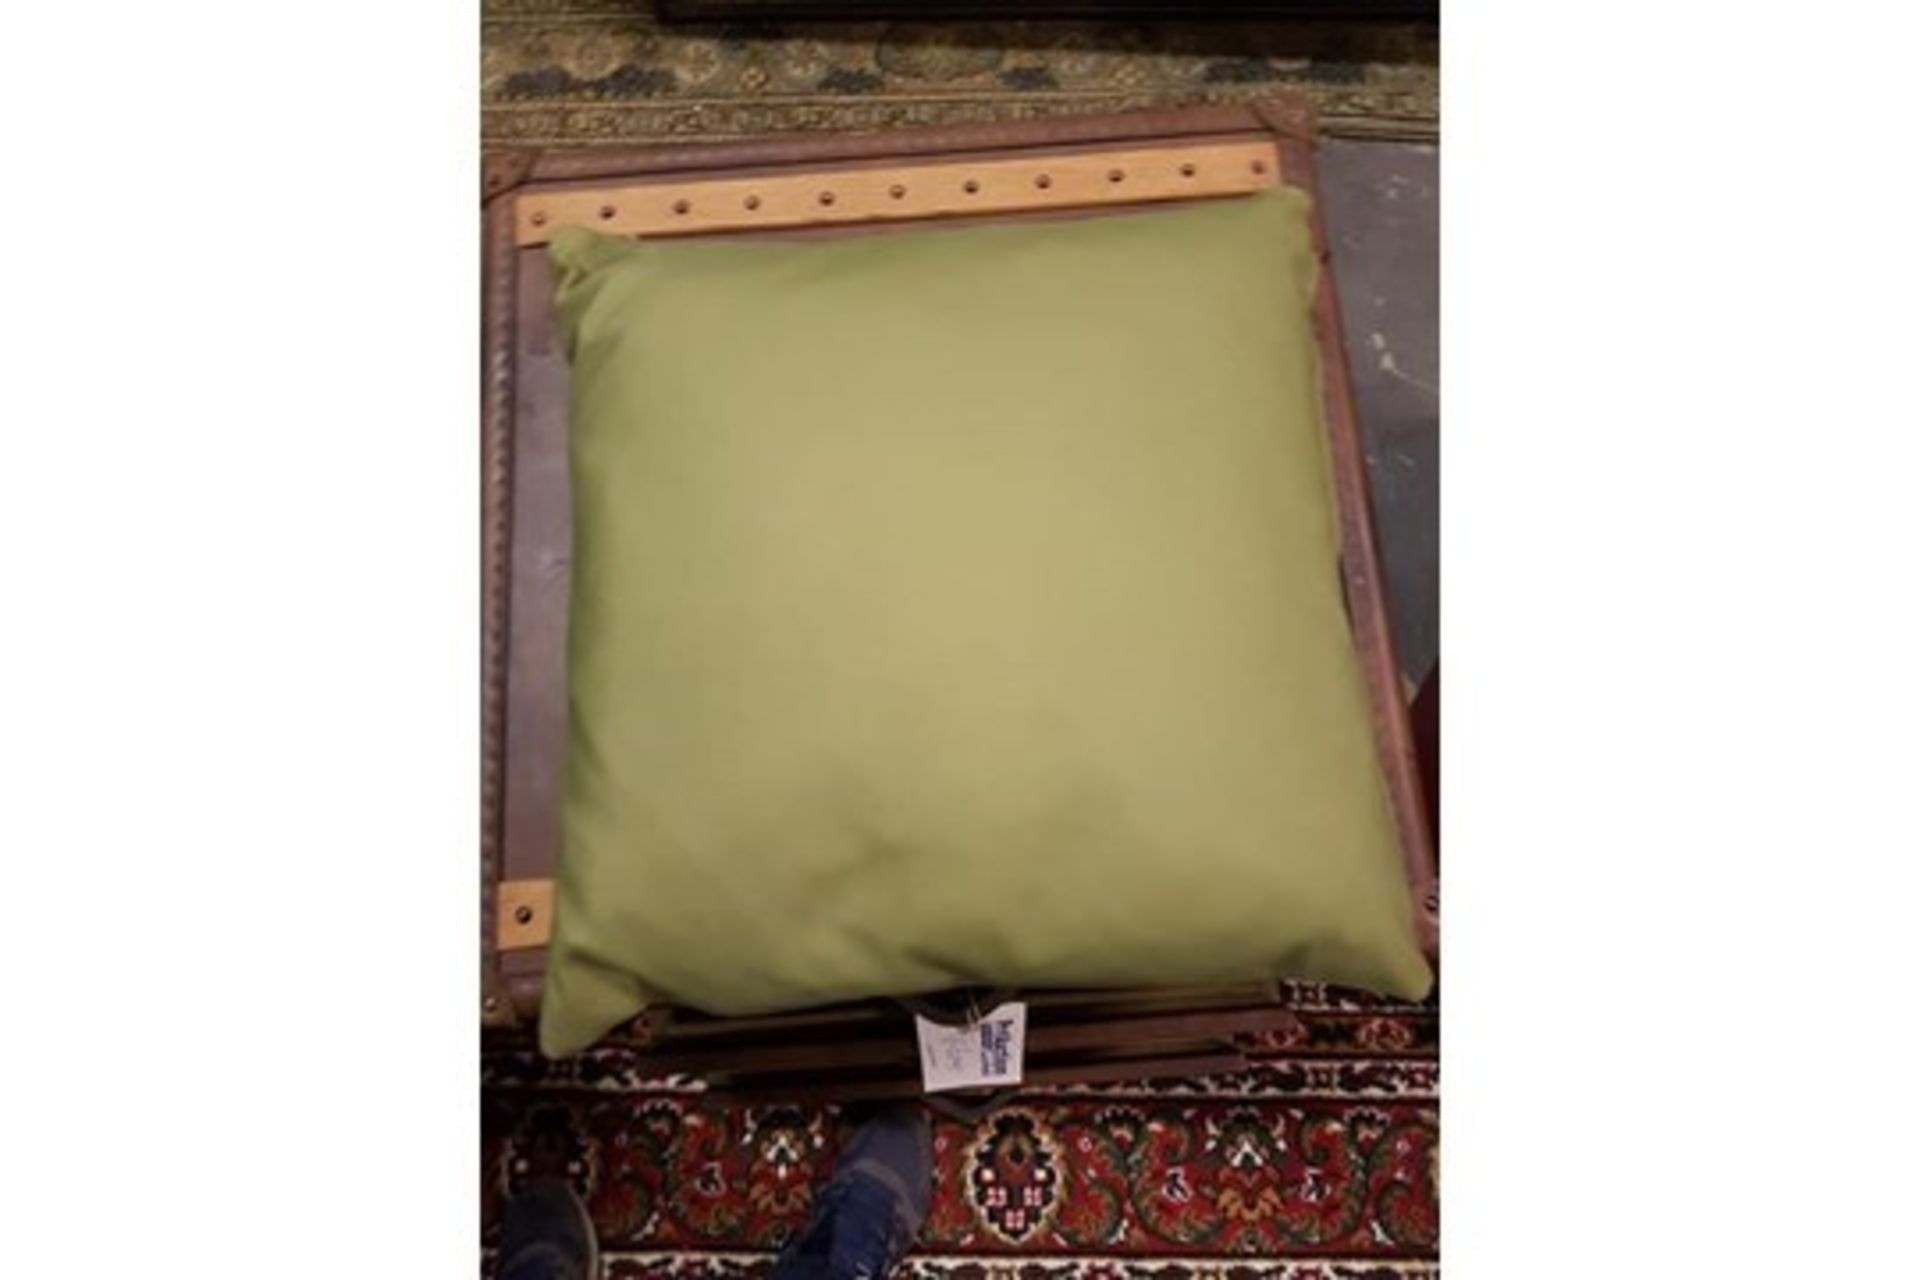 Cushion - 2 x Bleu Nature Cisko Green Cushion 47cm RRP £240 ( Location A7 -160)